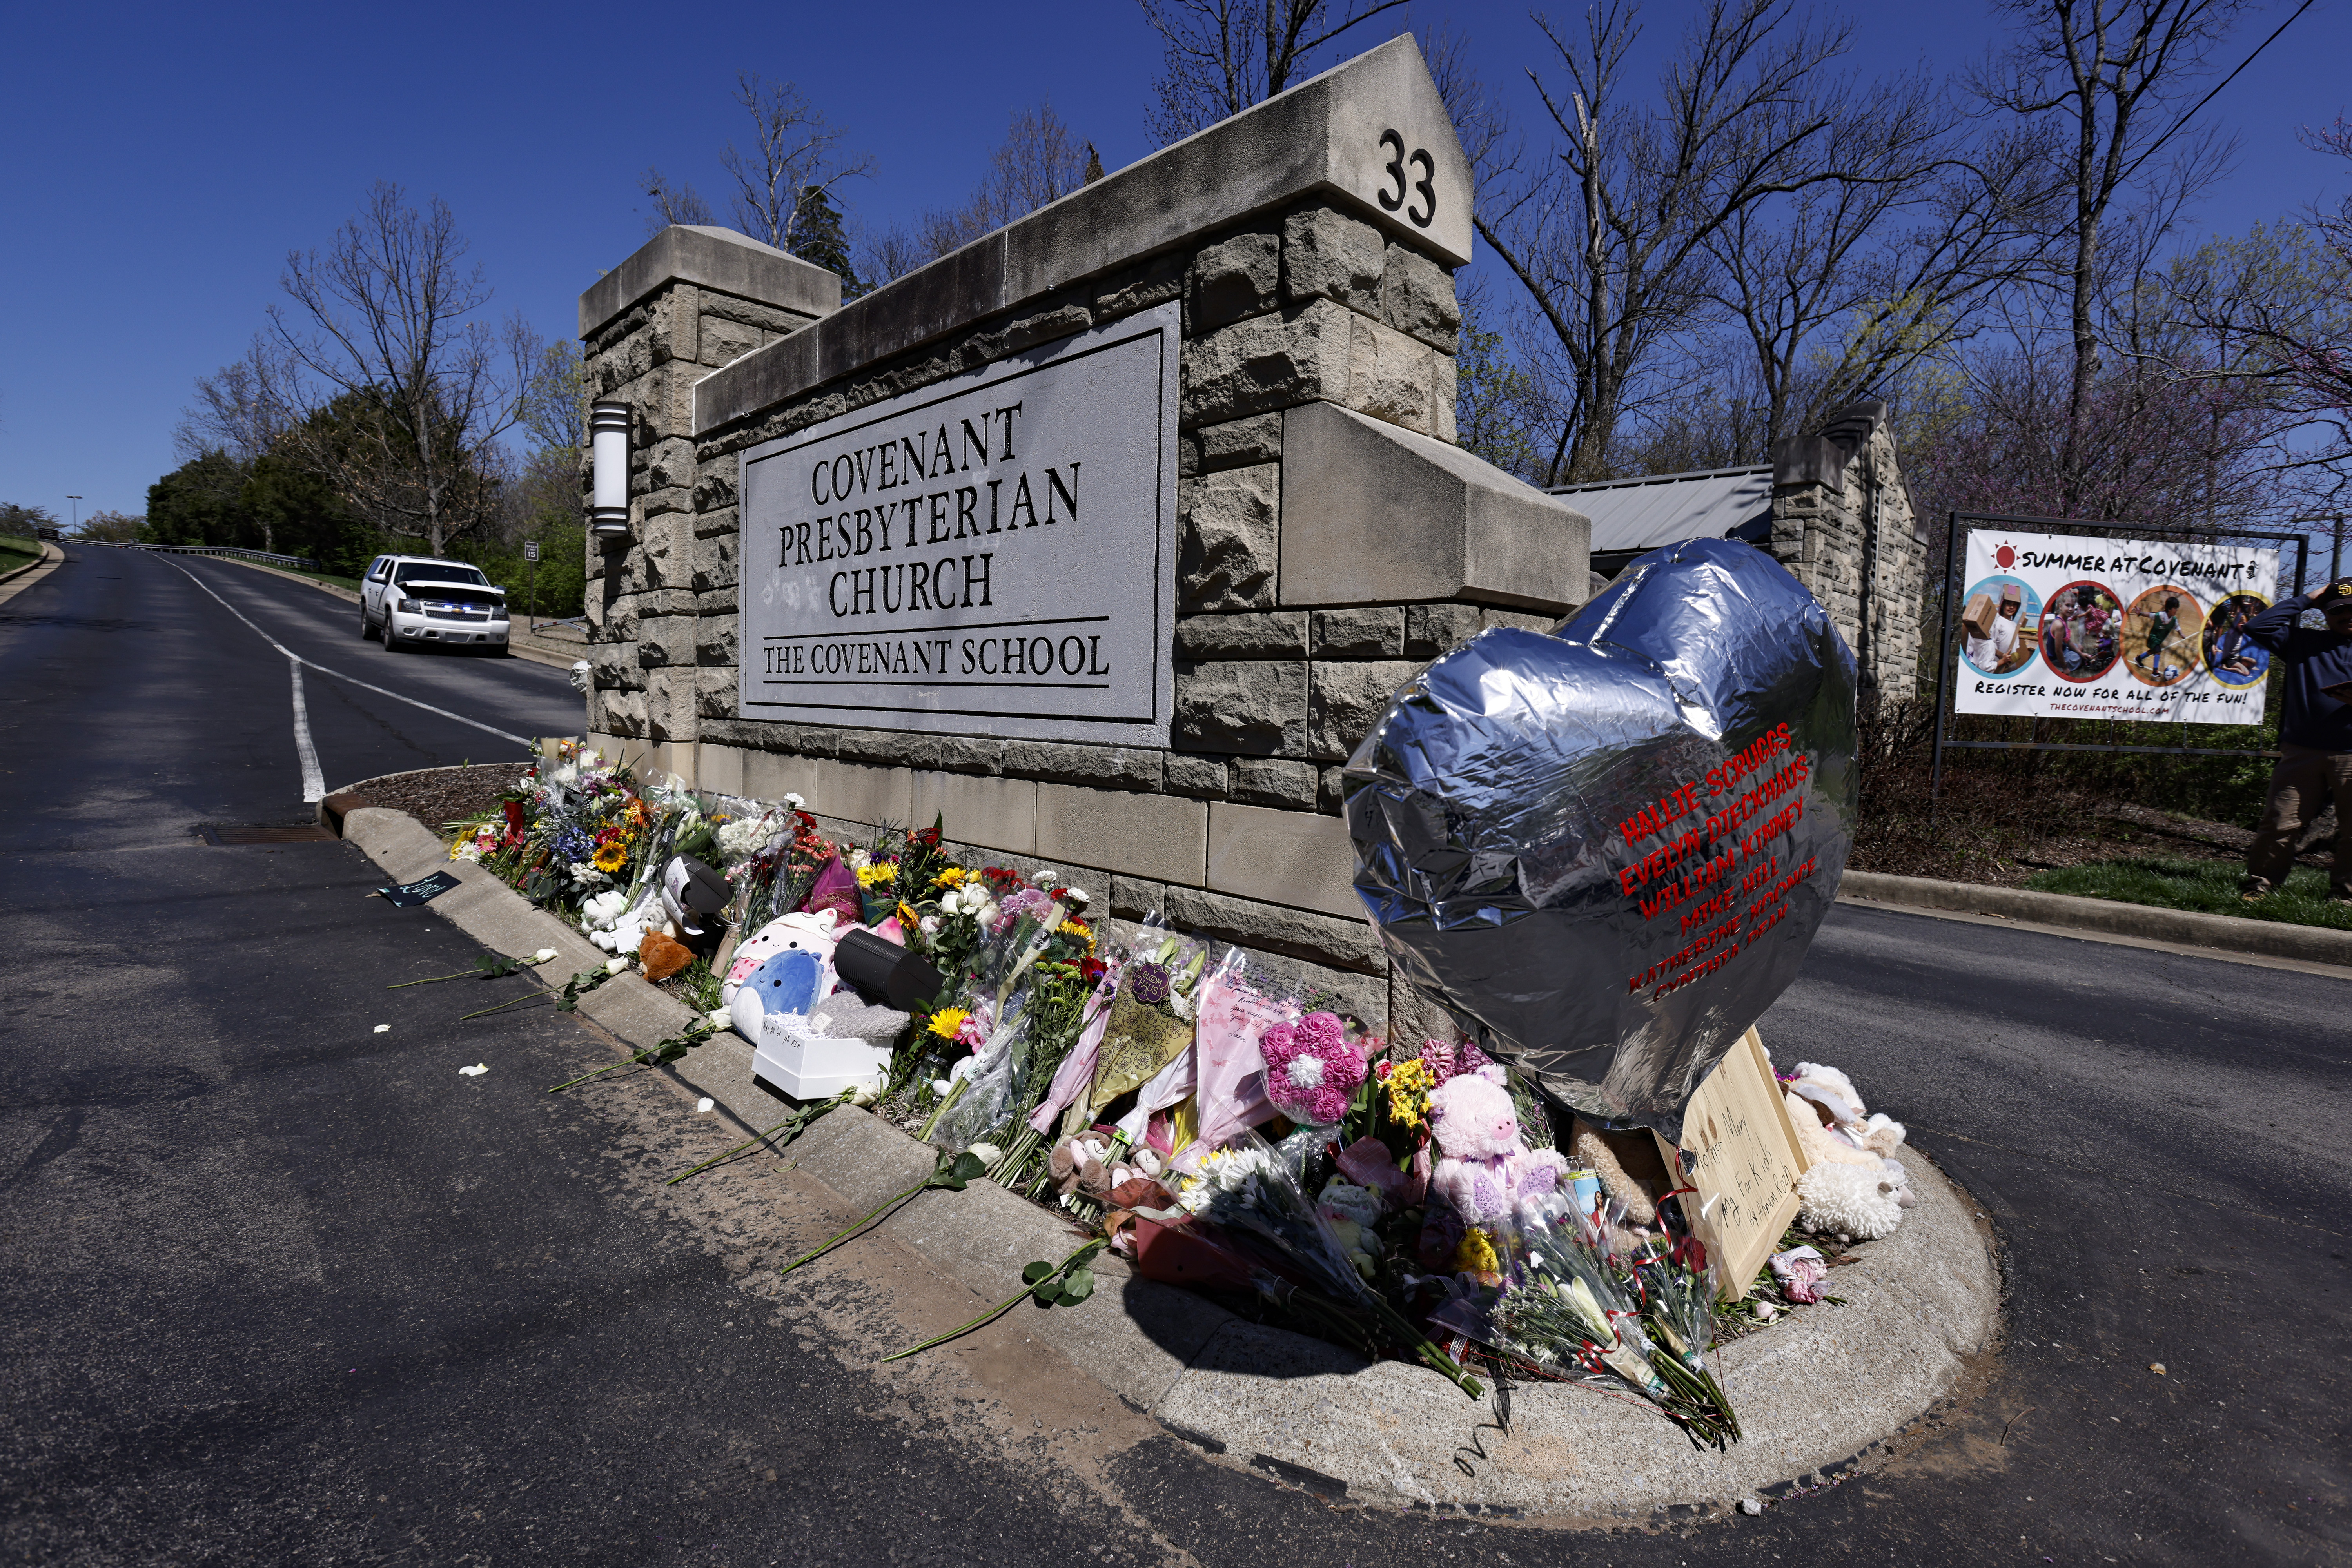 Un globo con los nombres de las víctimas se alza junto a los recordatorios en la entrada de la escuela Covenant, Nashville, Tennessee. Después de la matanza de Nashville, el Congreso se encuentra en el impasse de siempre. (AP Foto/Wade Payne, File)